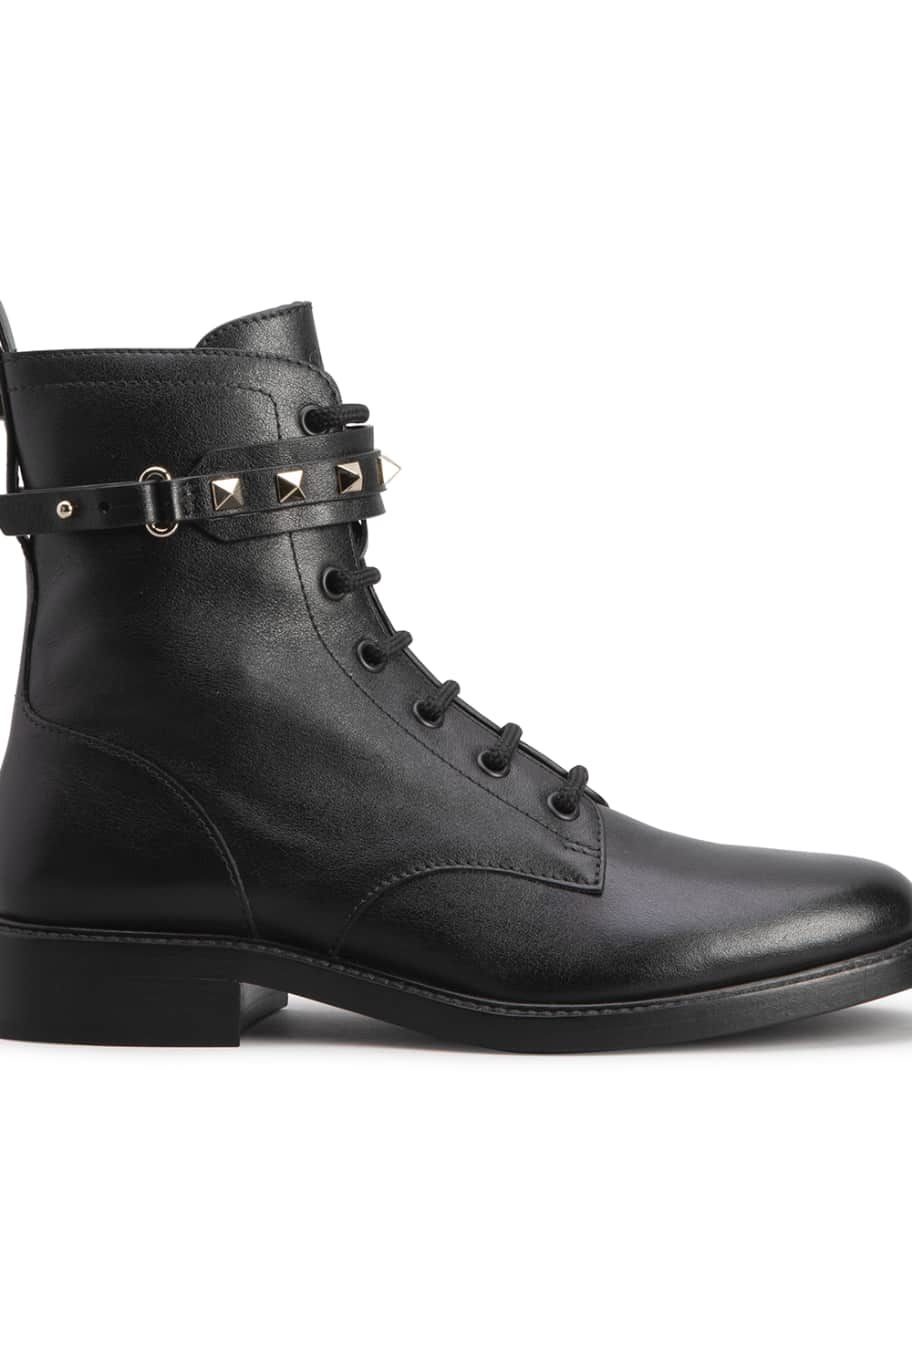 Valentino Garavani Rockstud Zip Leather Combat Boots | Neiman Marcus